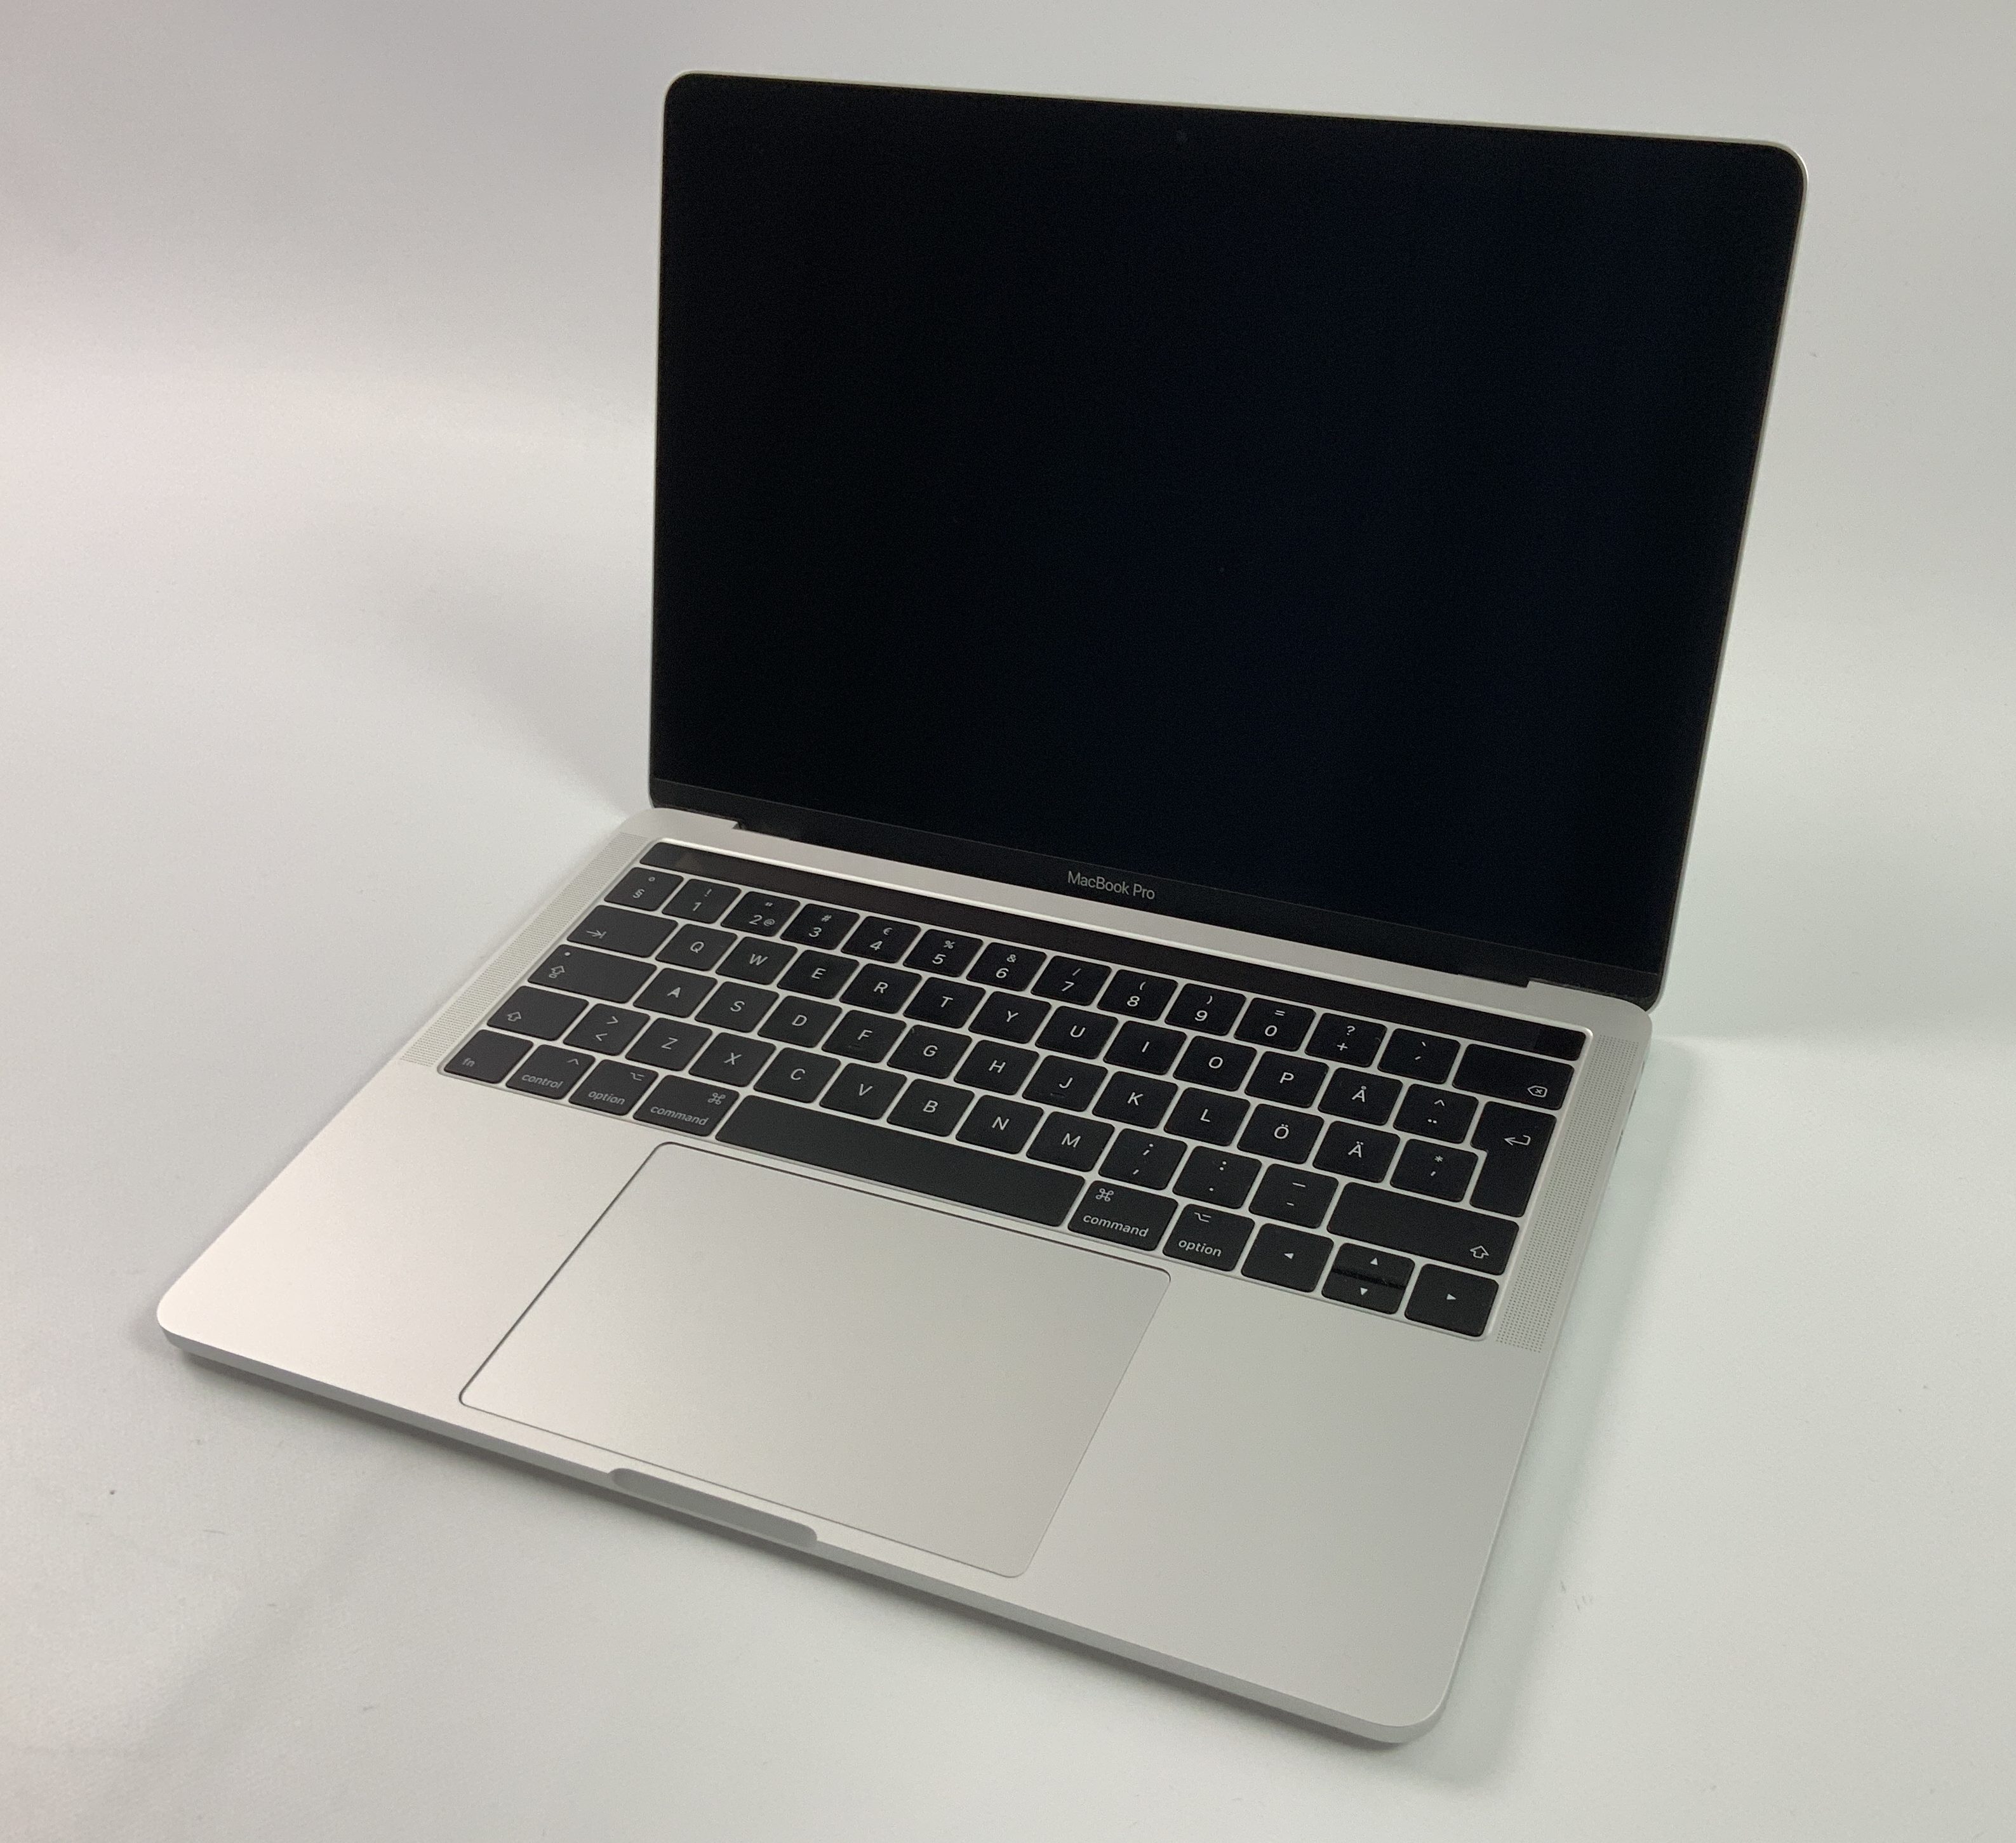 MacBook Pro 13" 4TBT Mid 2017 (Intel Core i5 3.1 GHz 8 GB RAM 256 GB SSD), Silver, Intel Core i5 3.1 GHz, 8 GB RAM, 256 GB SSD, image 1